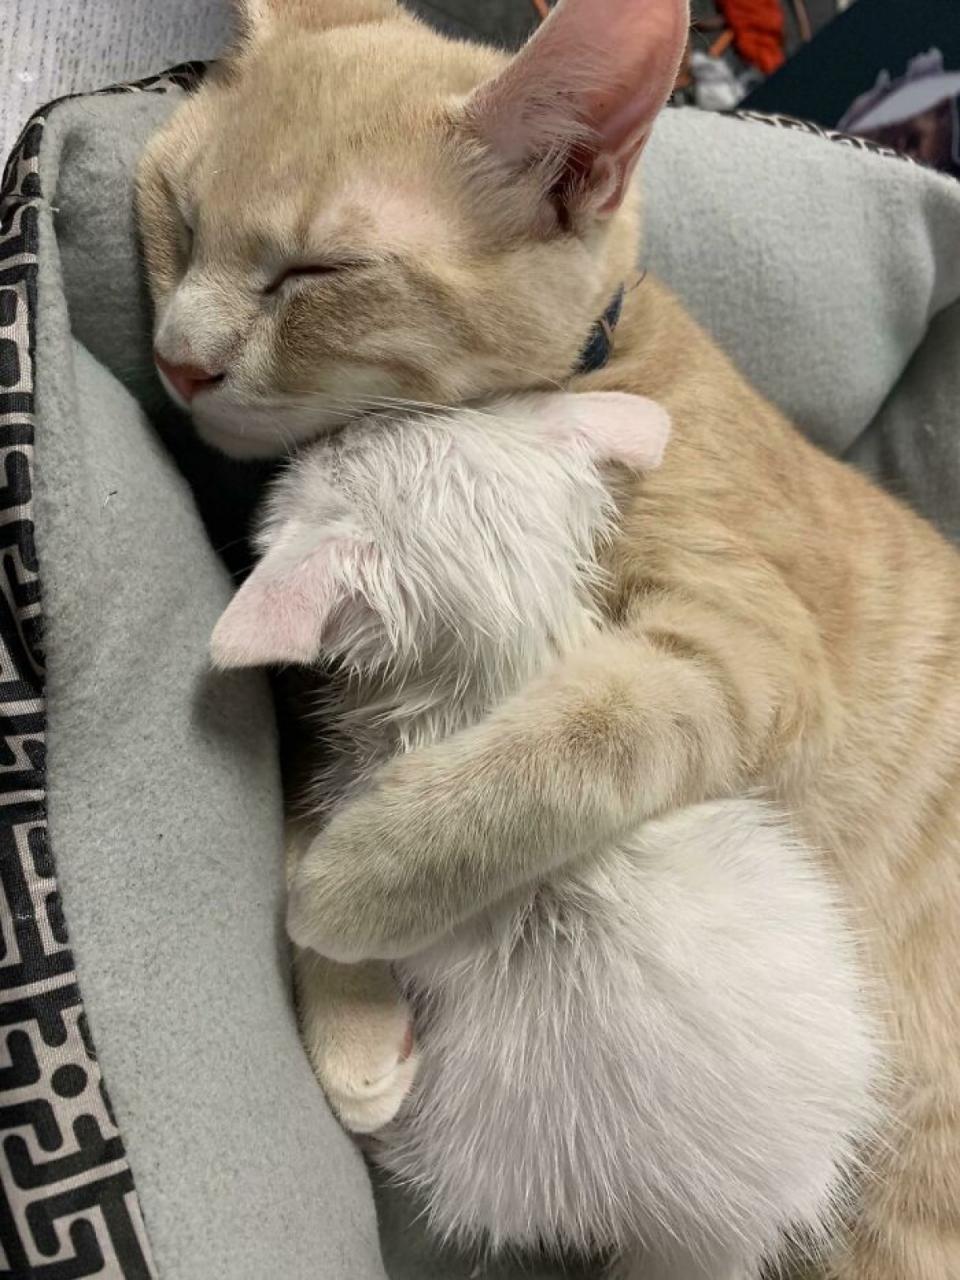 Ảnh hai chú mèo ôm nhau ngủ